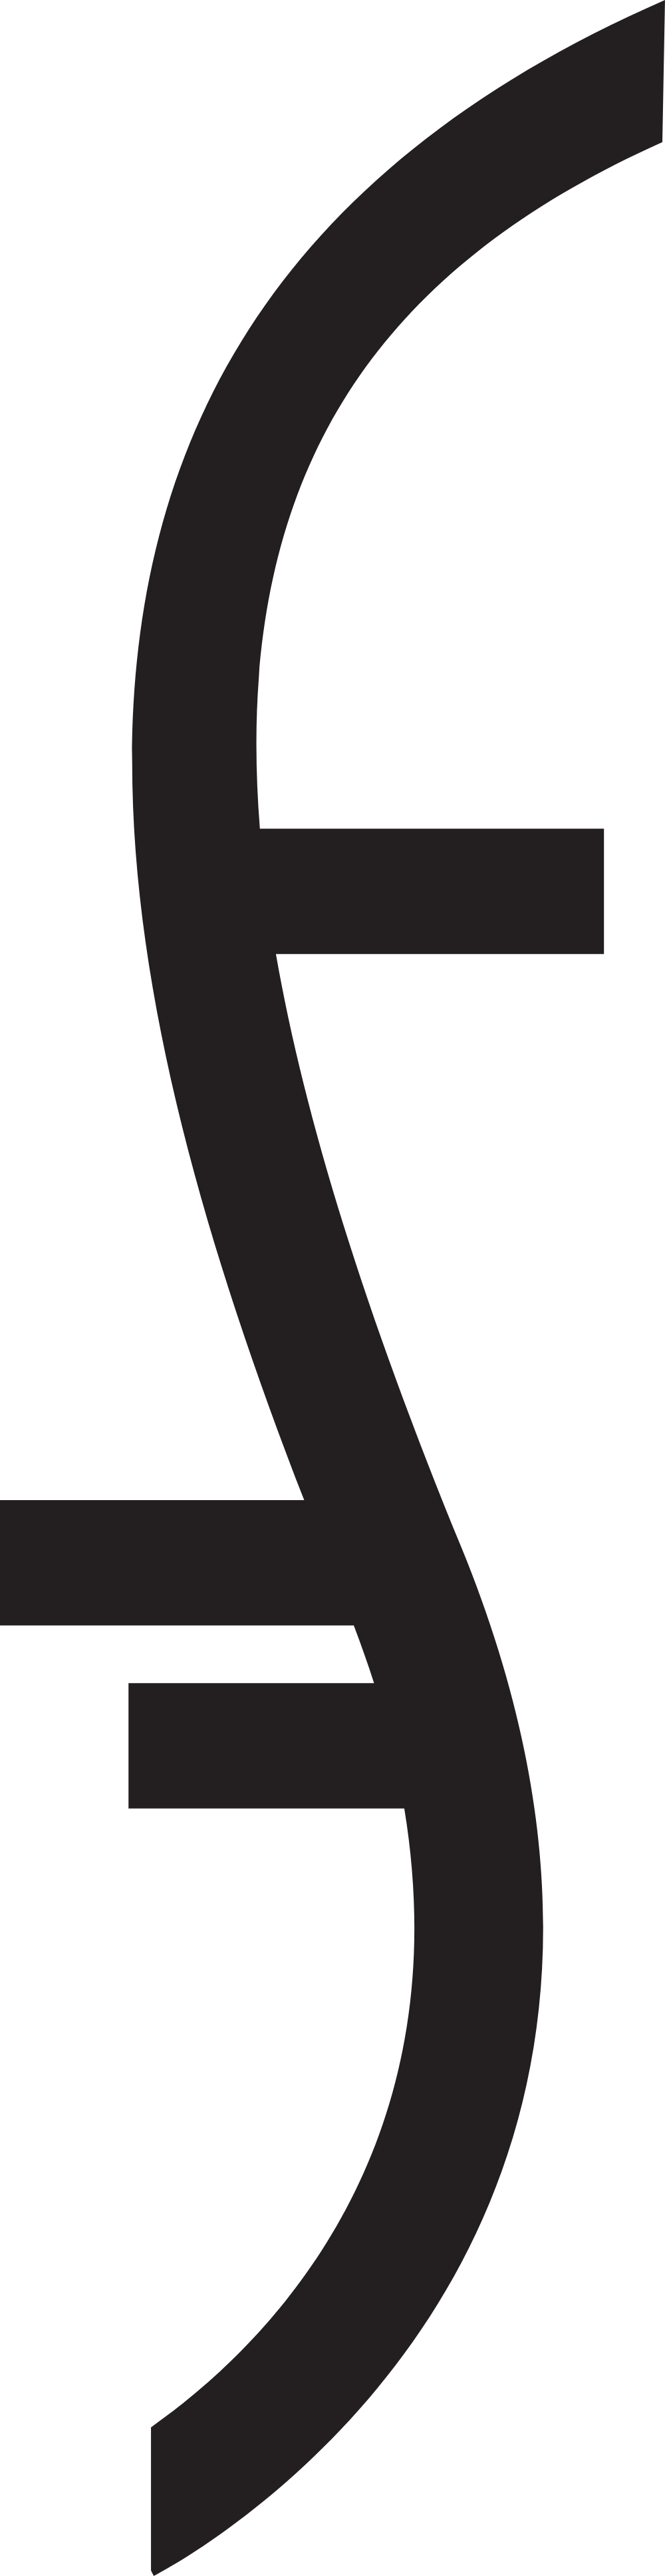 Heroes - Symbol Logo Logos